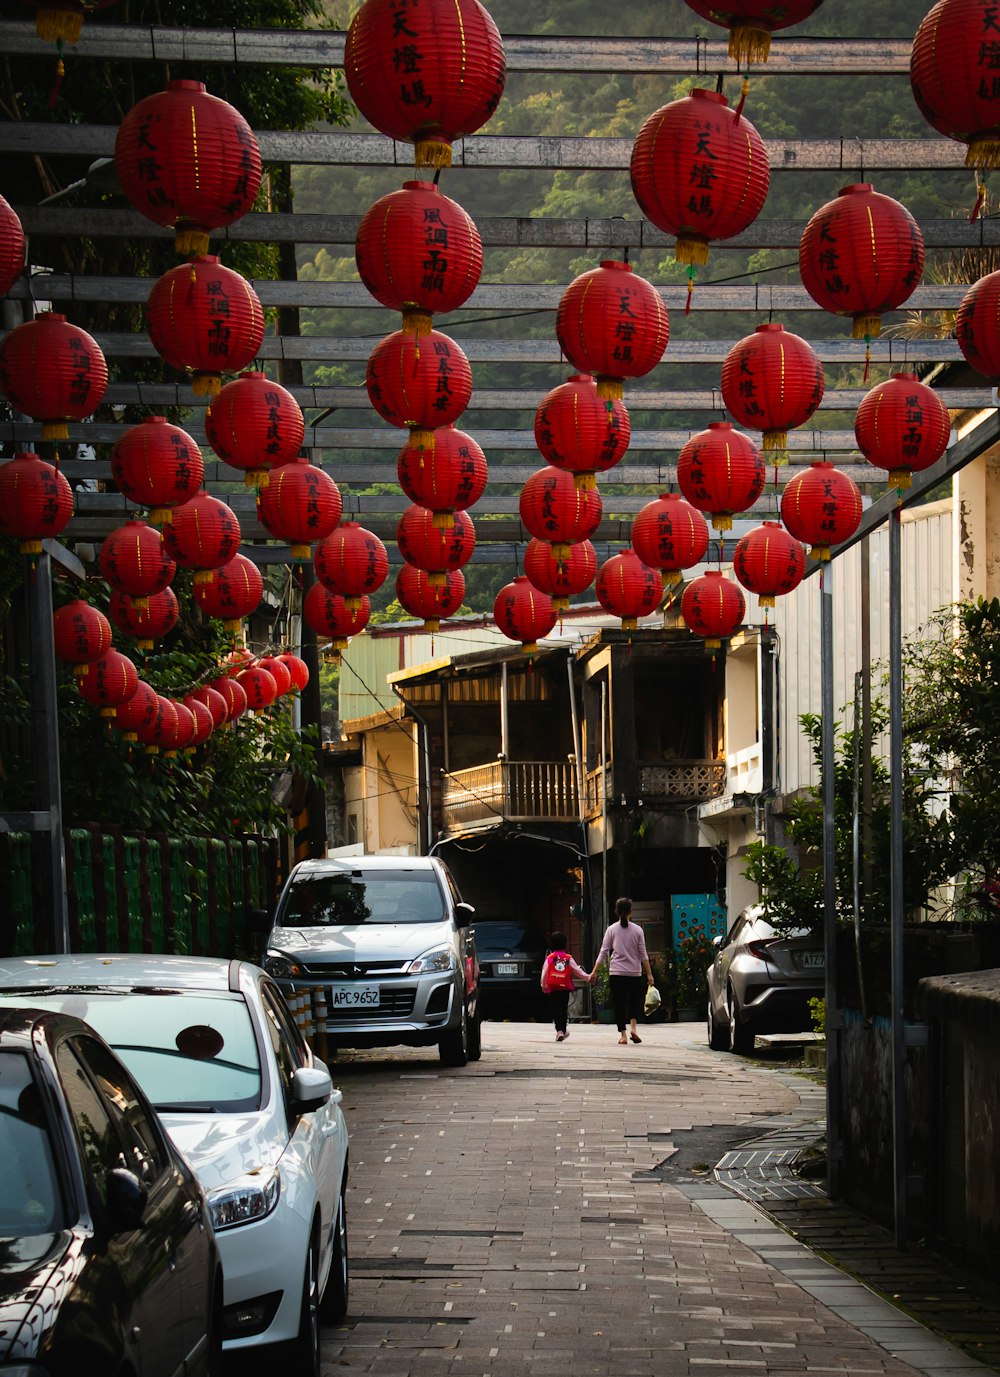 palloncini rotondi rossi sulla strada durante il giorno